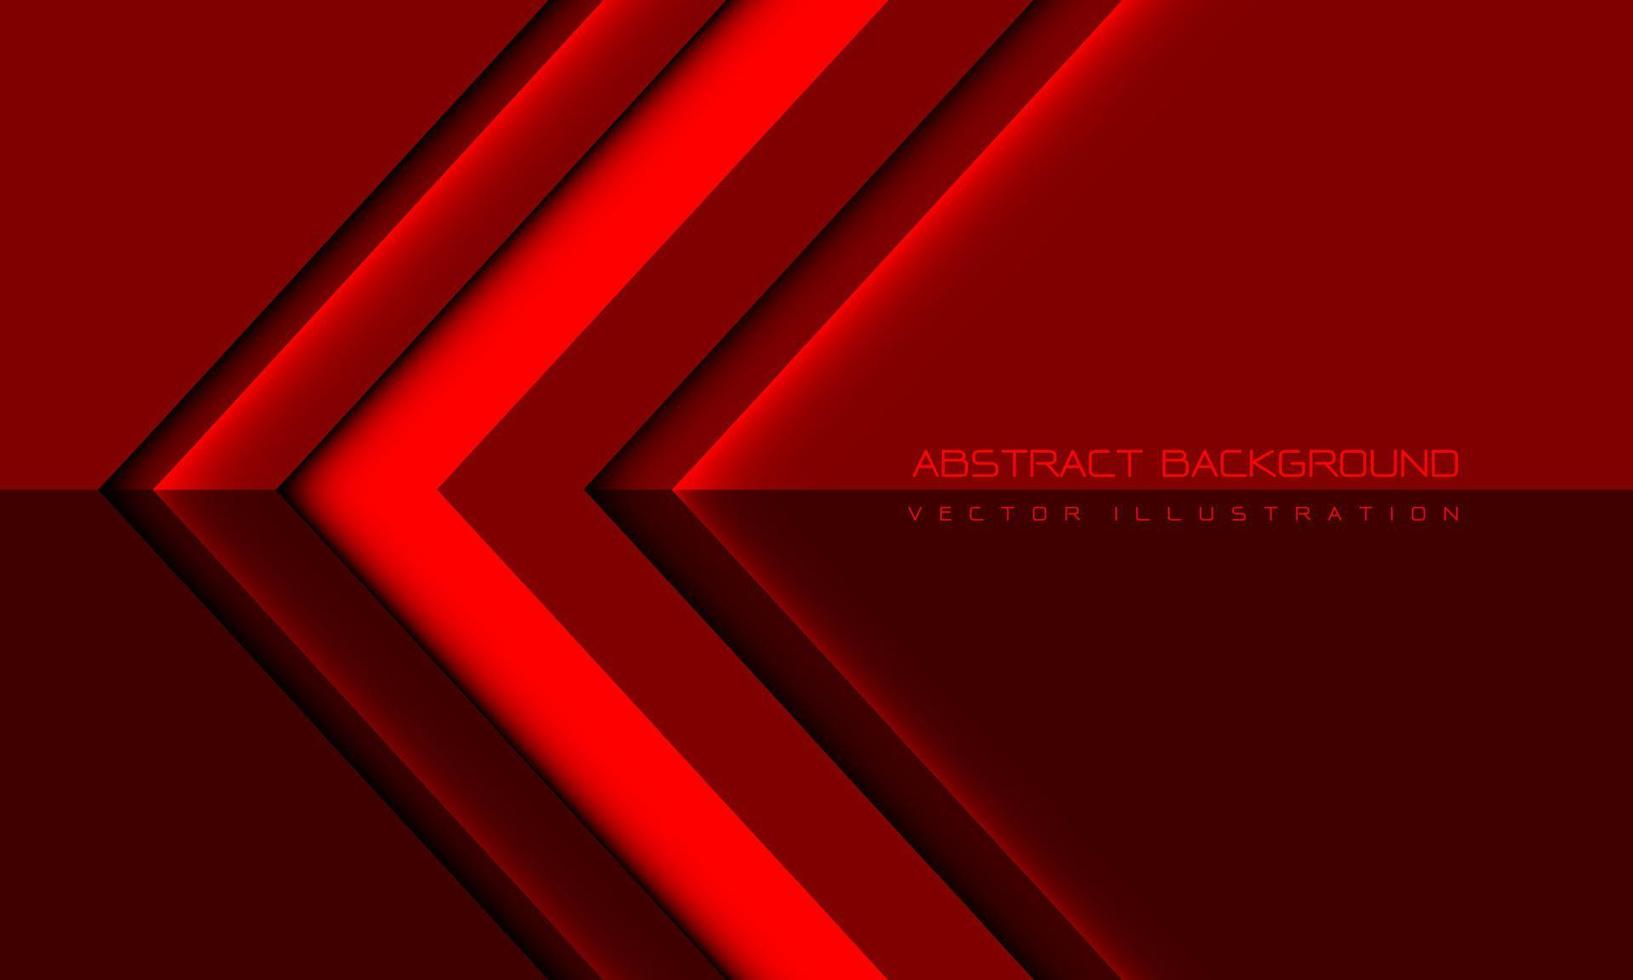 direção de seta grosseira vermelha abstrata geométrica com design de espaço em branco moderno vetor de fundo futurista